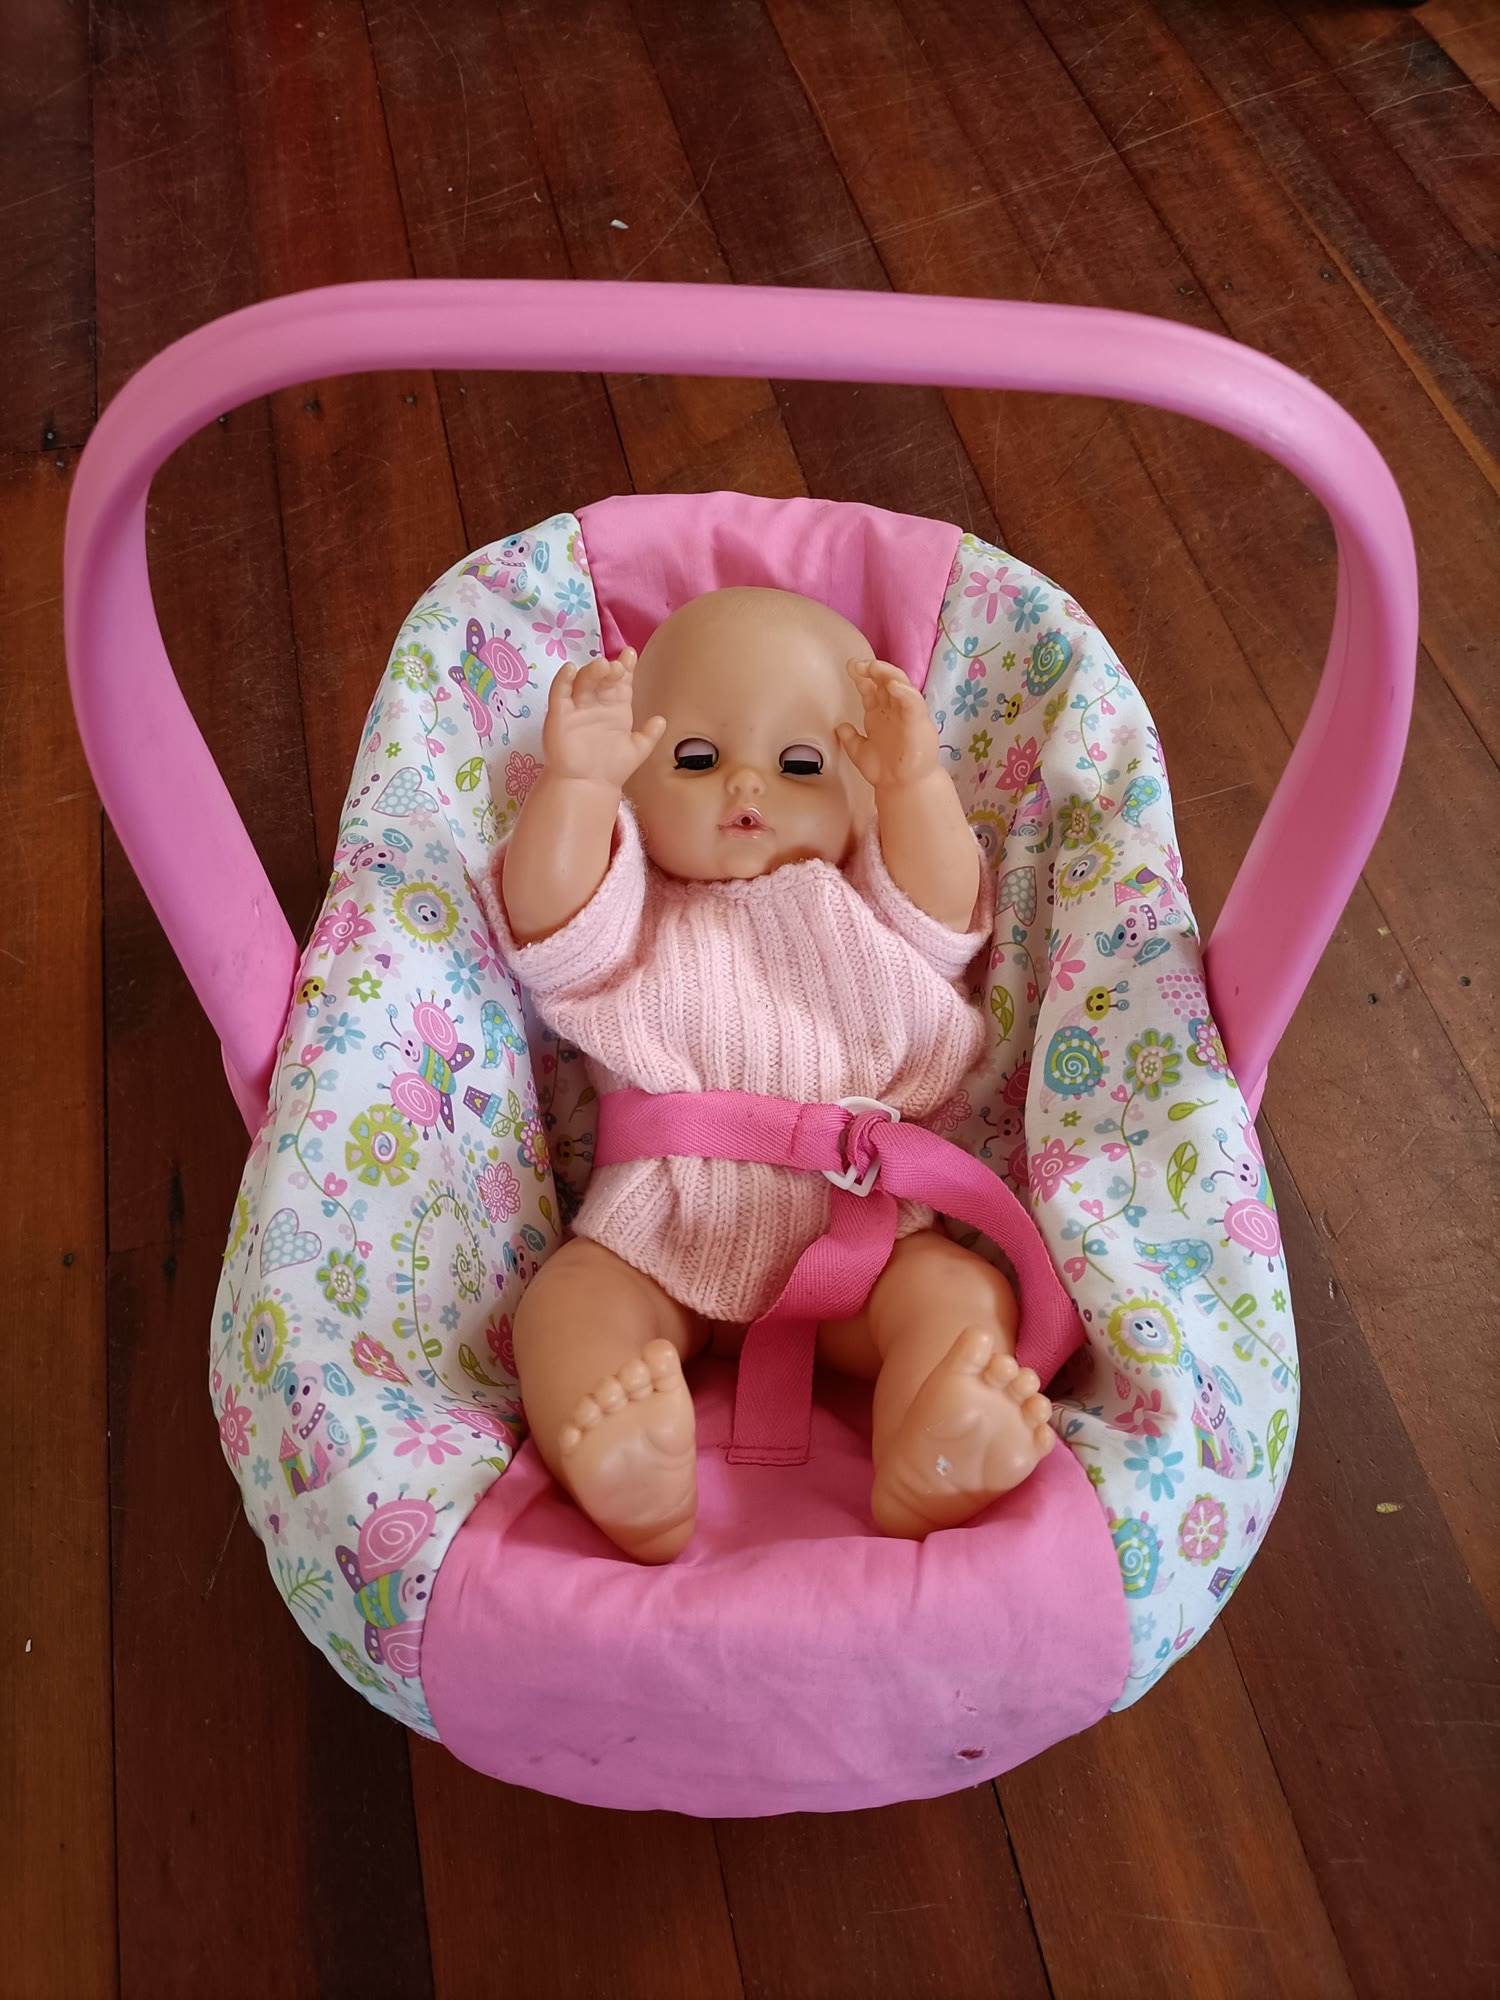 Baby Doll in Capsule